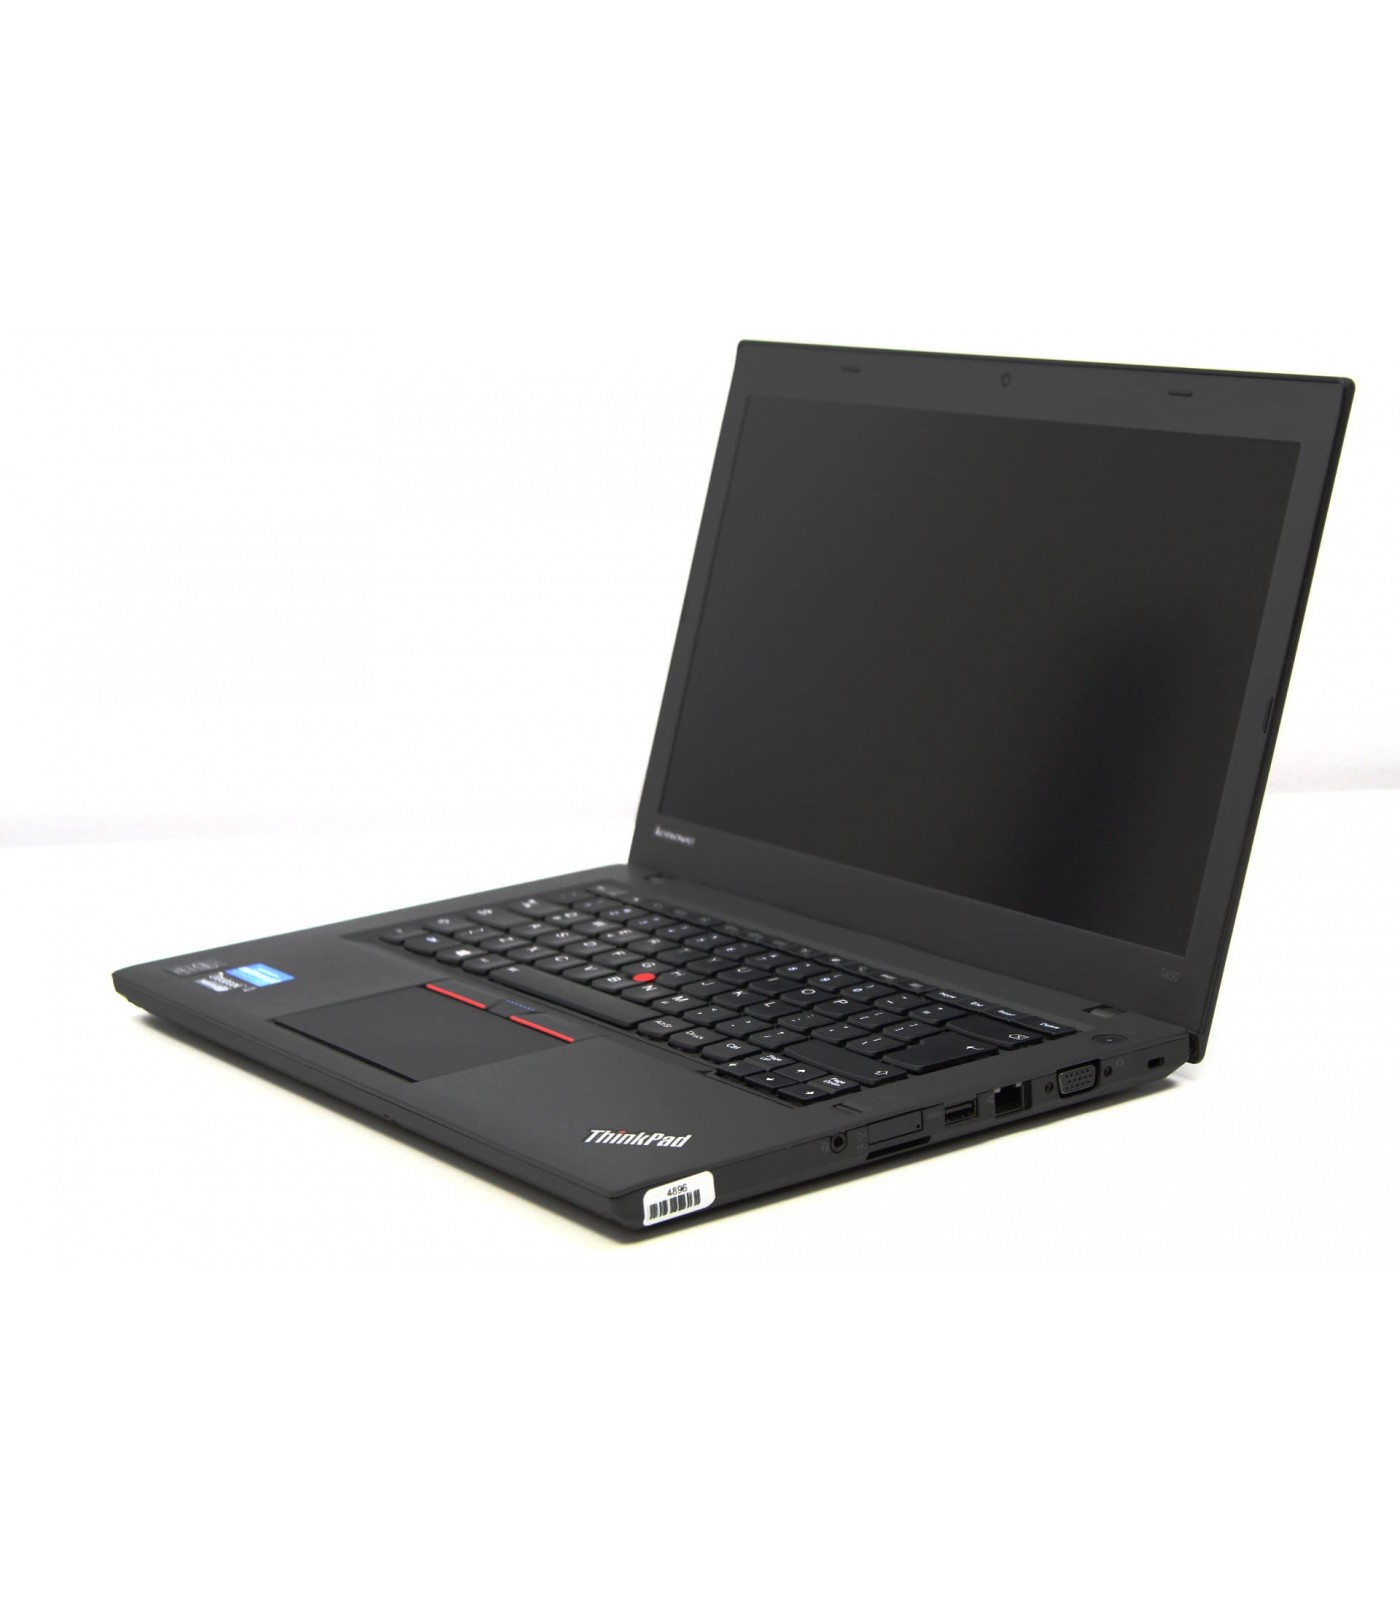 Poleasingowy laptop Lenovo Thinpad T450 z ekranem HD+ w klasie A-